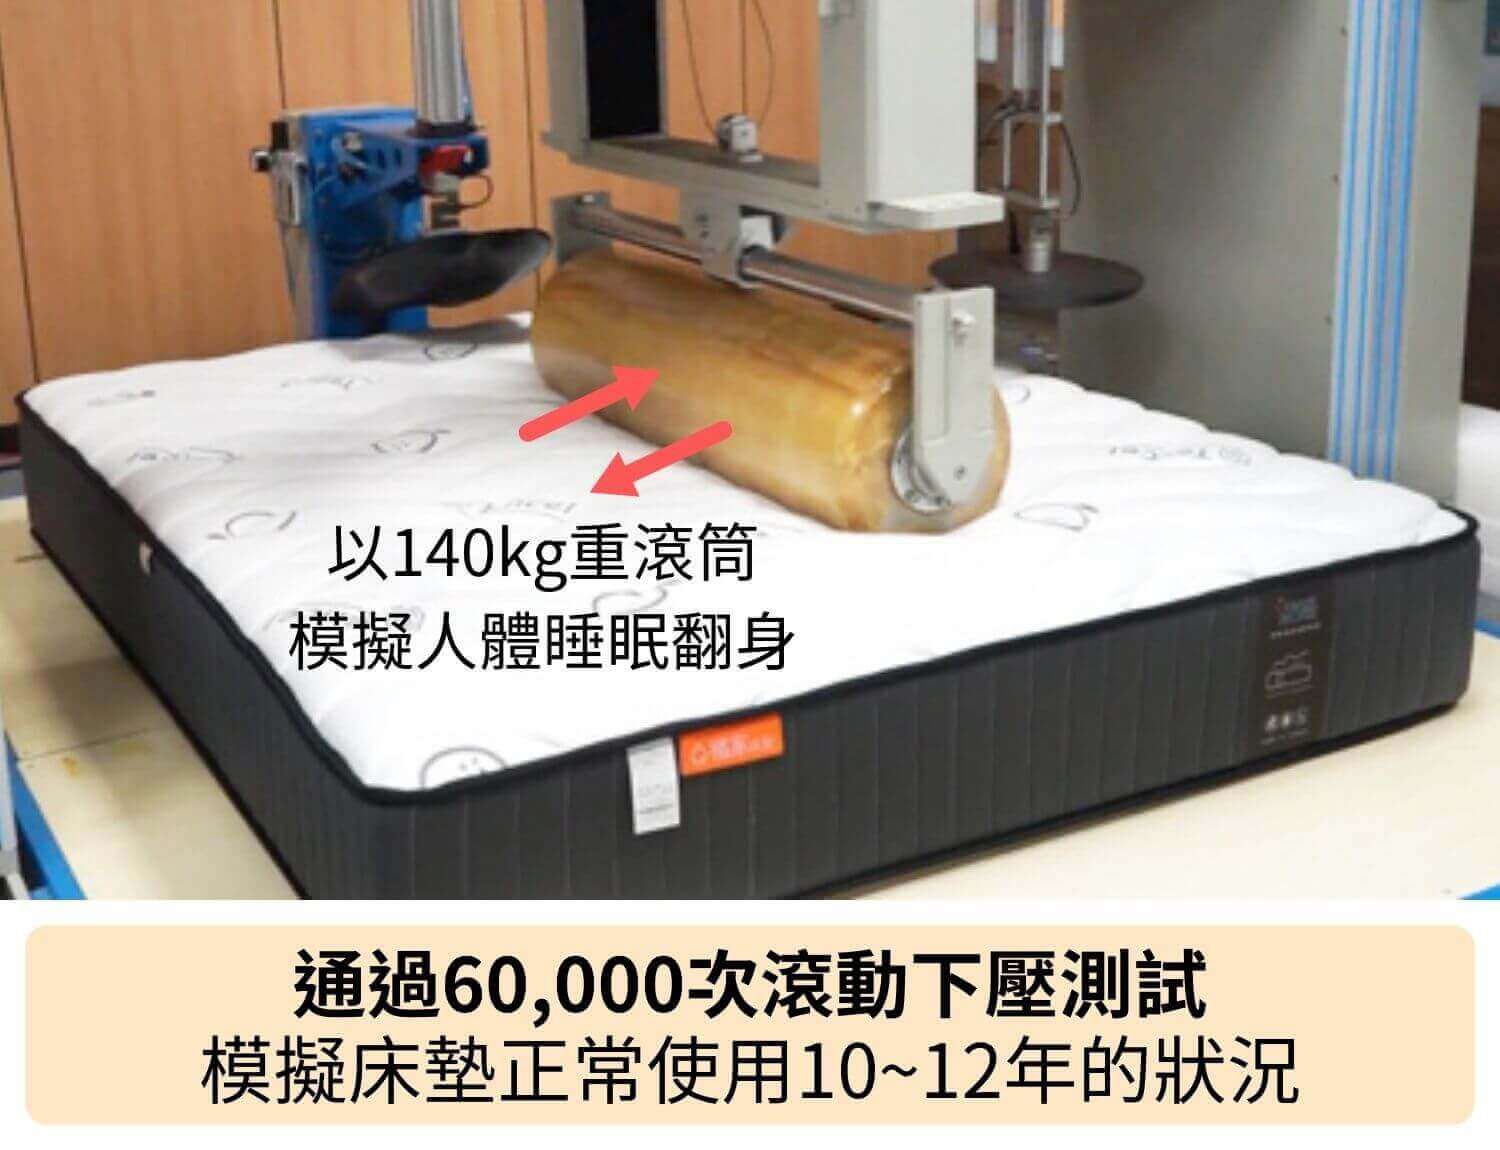 耐用度通過60,000次滾動下壓測試，以140kg重的滾筒模擬床墊正常使用10~12年的狀況